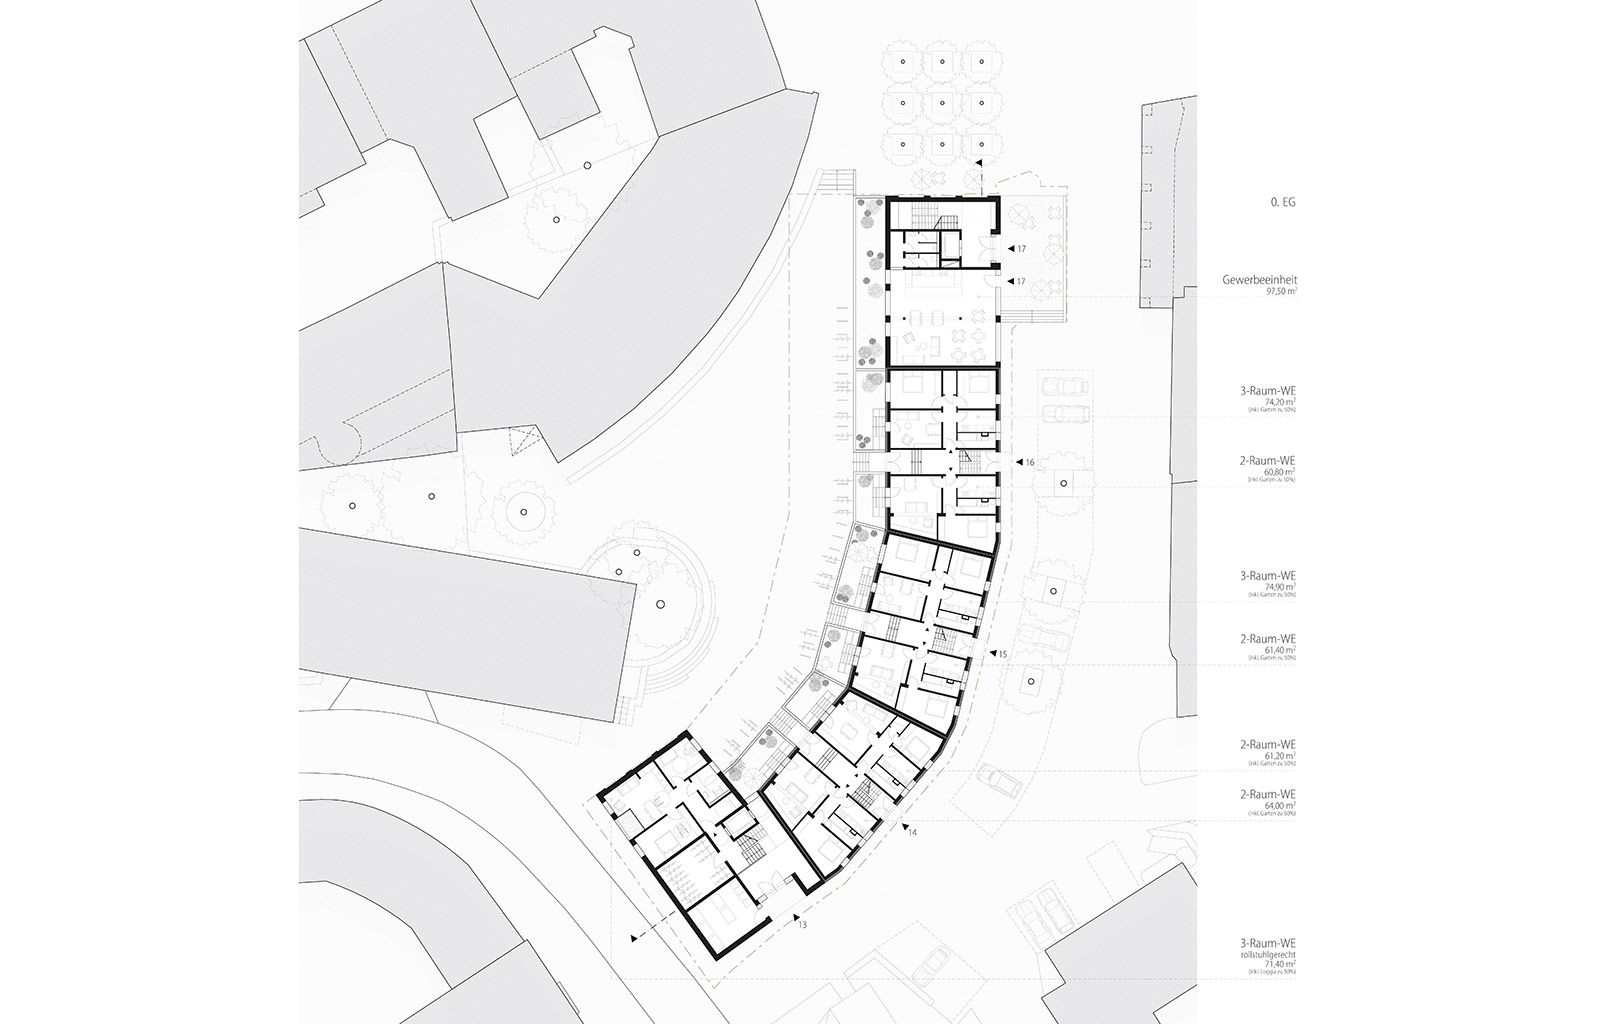 Neubau und Sanierung Wohn-und Geschäftsbebauung Schülershof 13-17 in Halle (Saale)